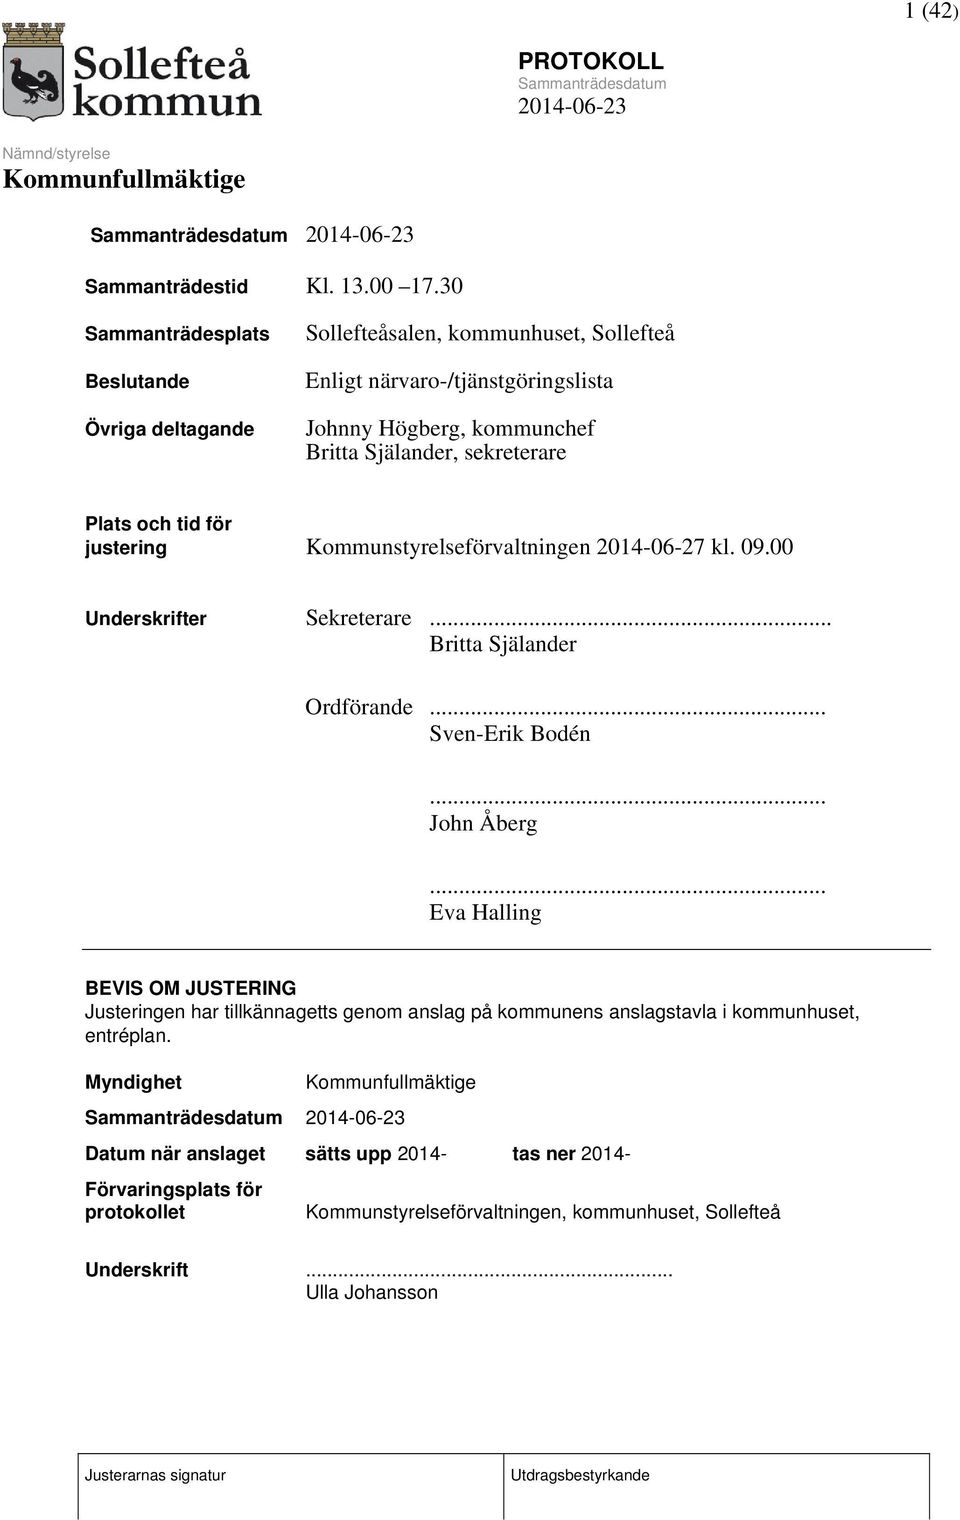 sekreterare Plats och tid för justering Kommunstyrelseförvaltningen 2014-06-27 kl. 09.00 Underskrifter Sekreterare... Britta Själander Ordförande... Sven-Erik Bodén.